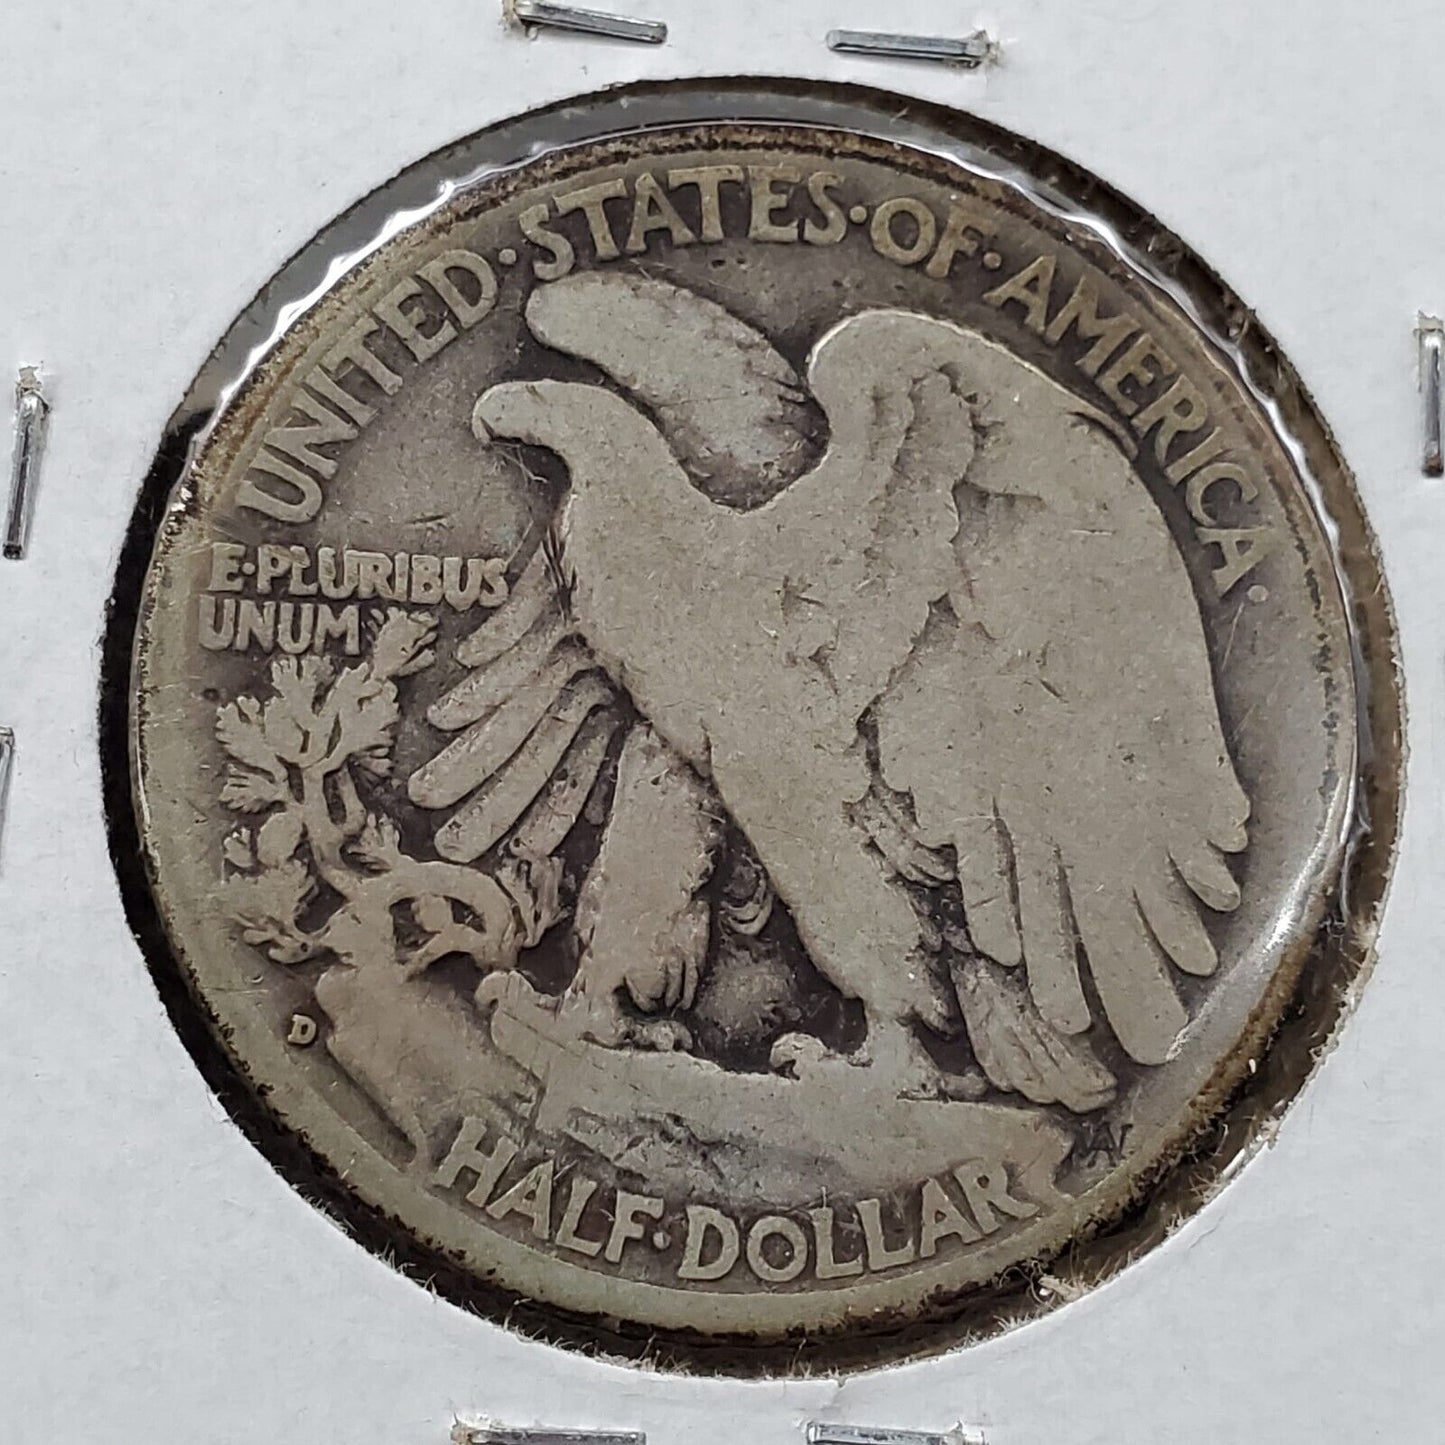 1936 D Walking Liberty Silver Half Dollar Coin VG Very Good Circ